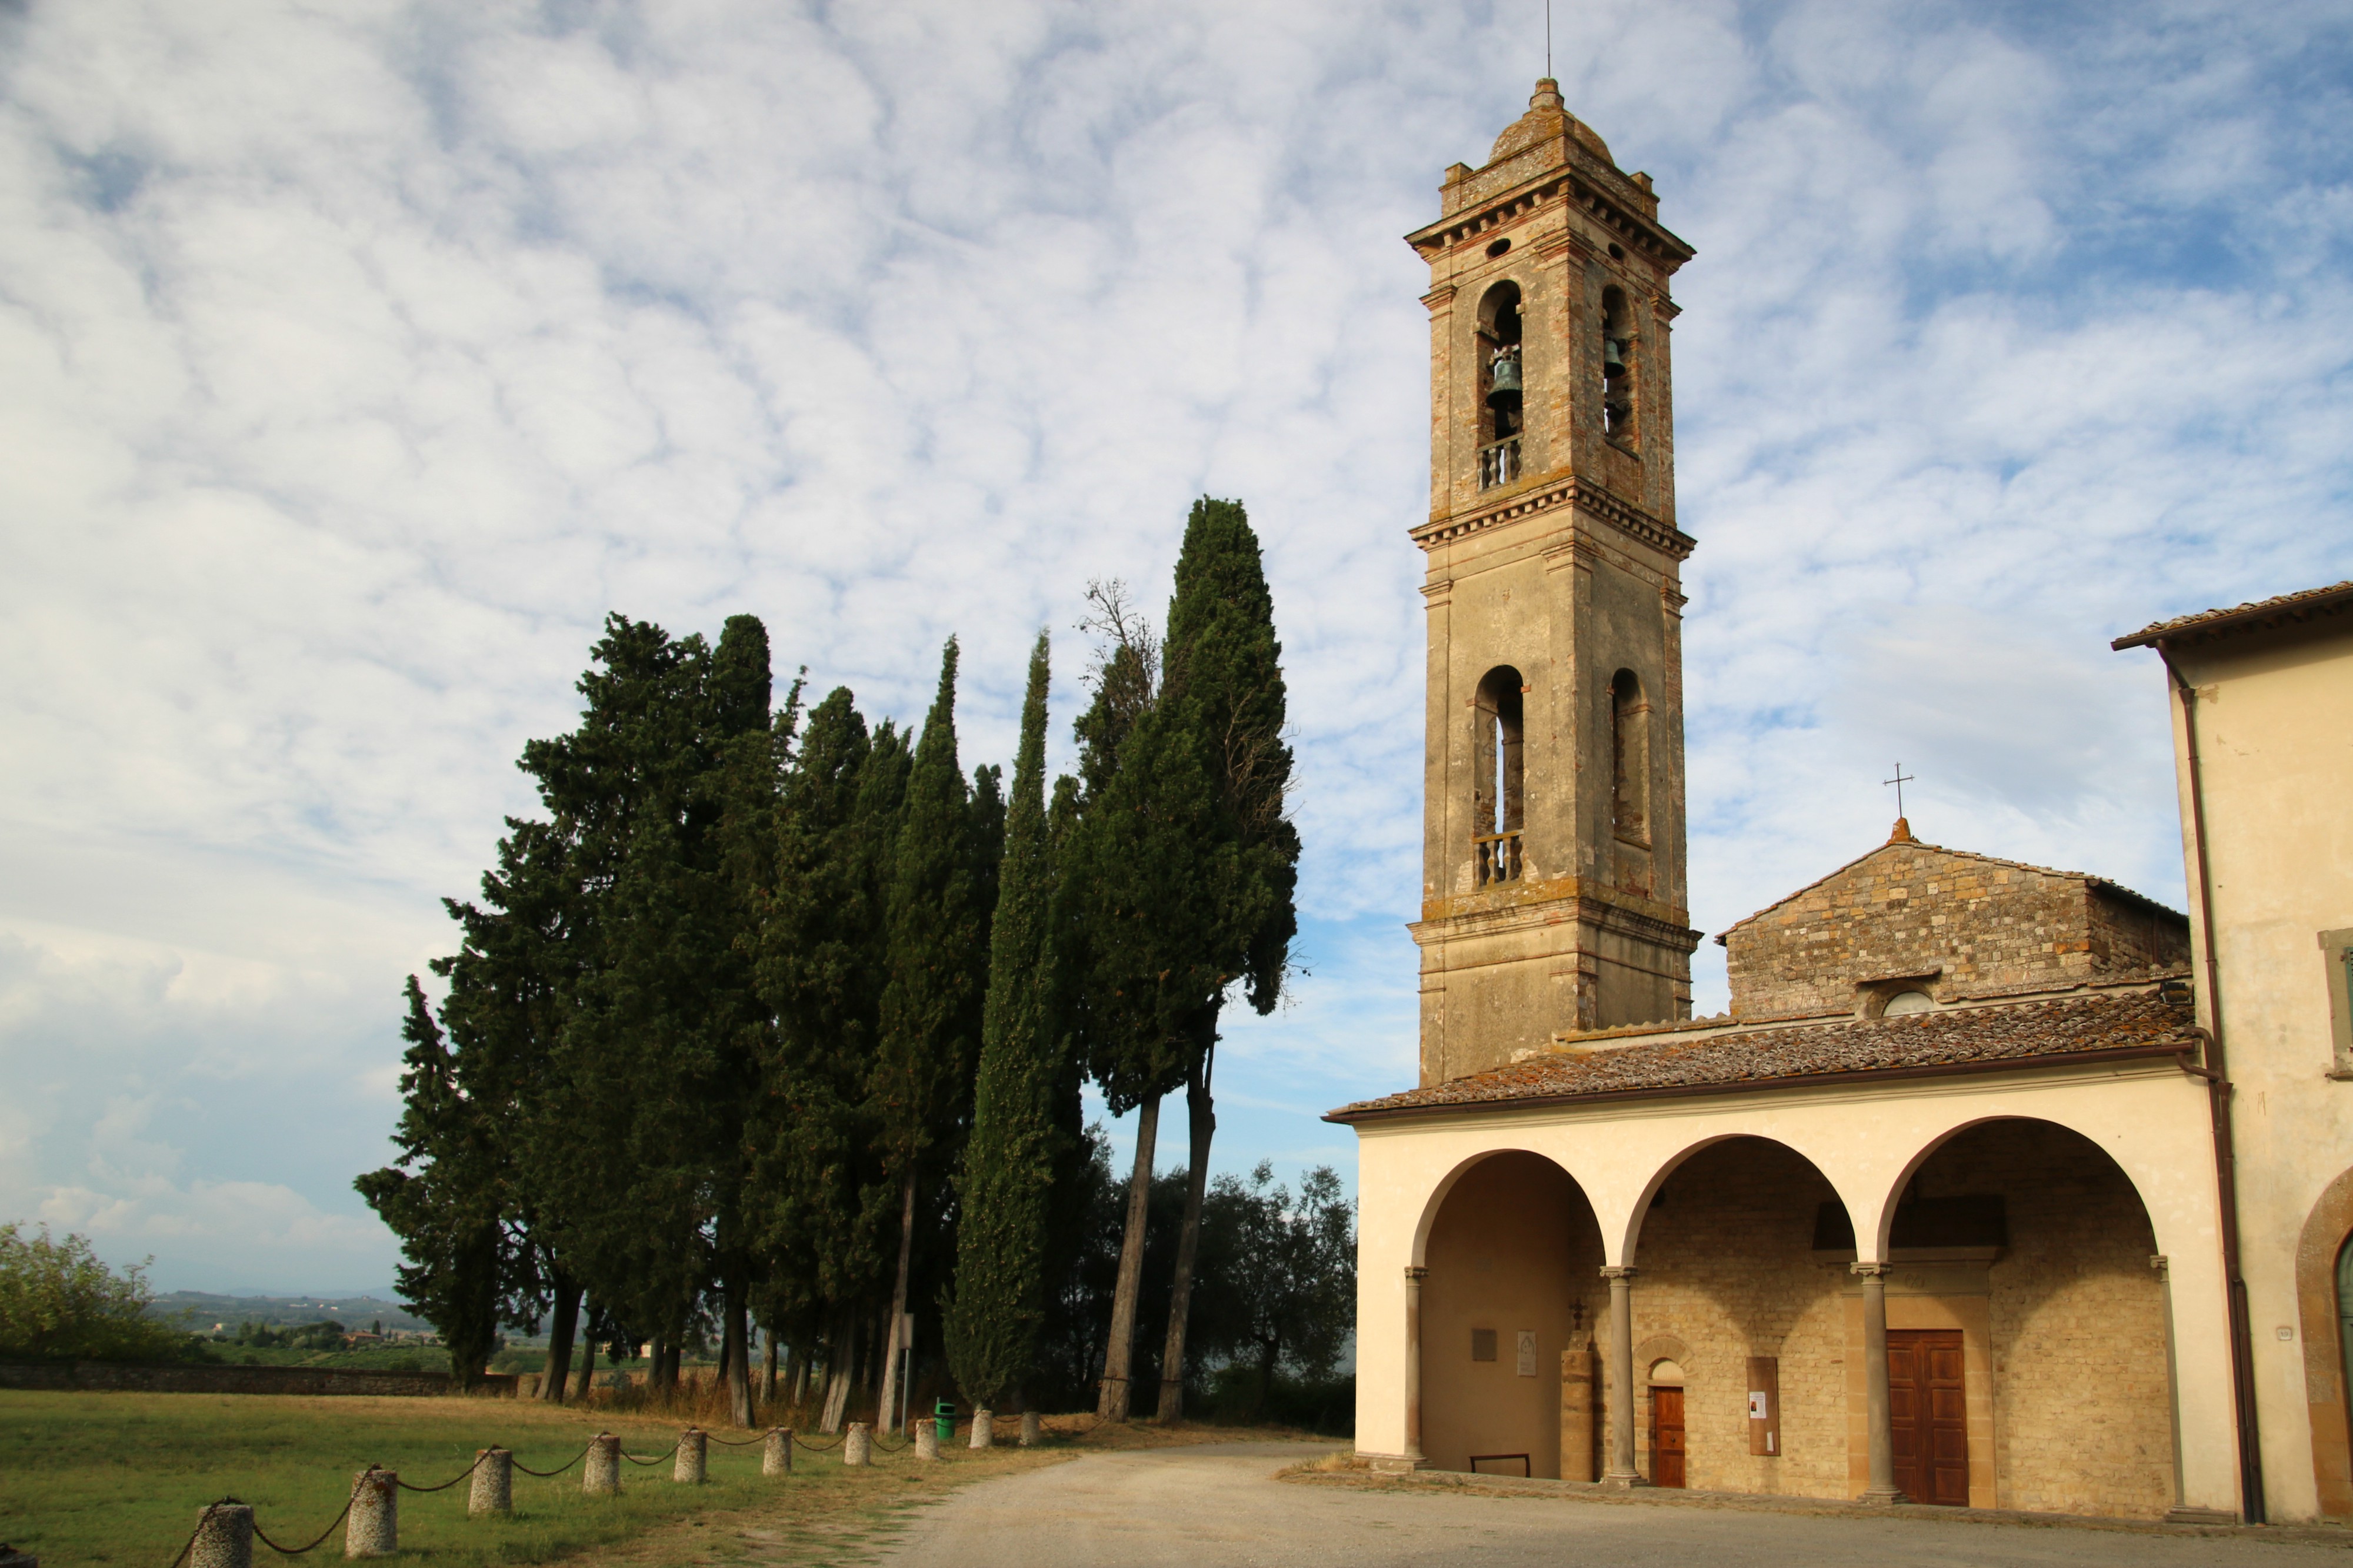 Pieve San Pietro in Bossolo